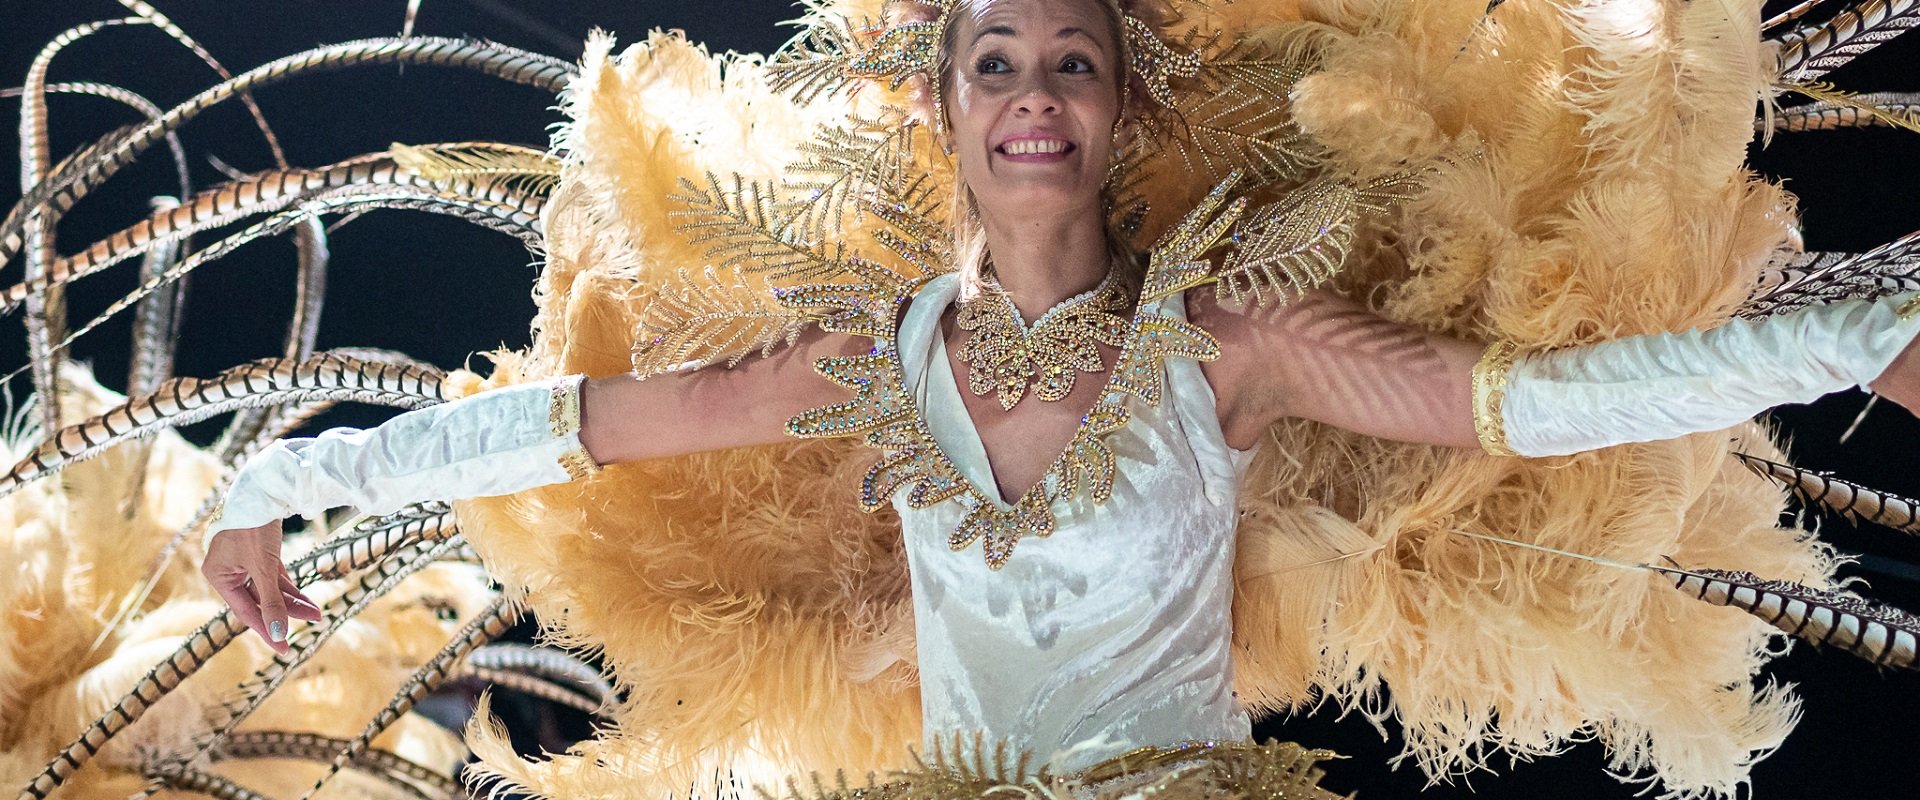 Entre Ríos llegó a niveles récord de movimiento turístico este fin de semana de carnaval